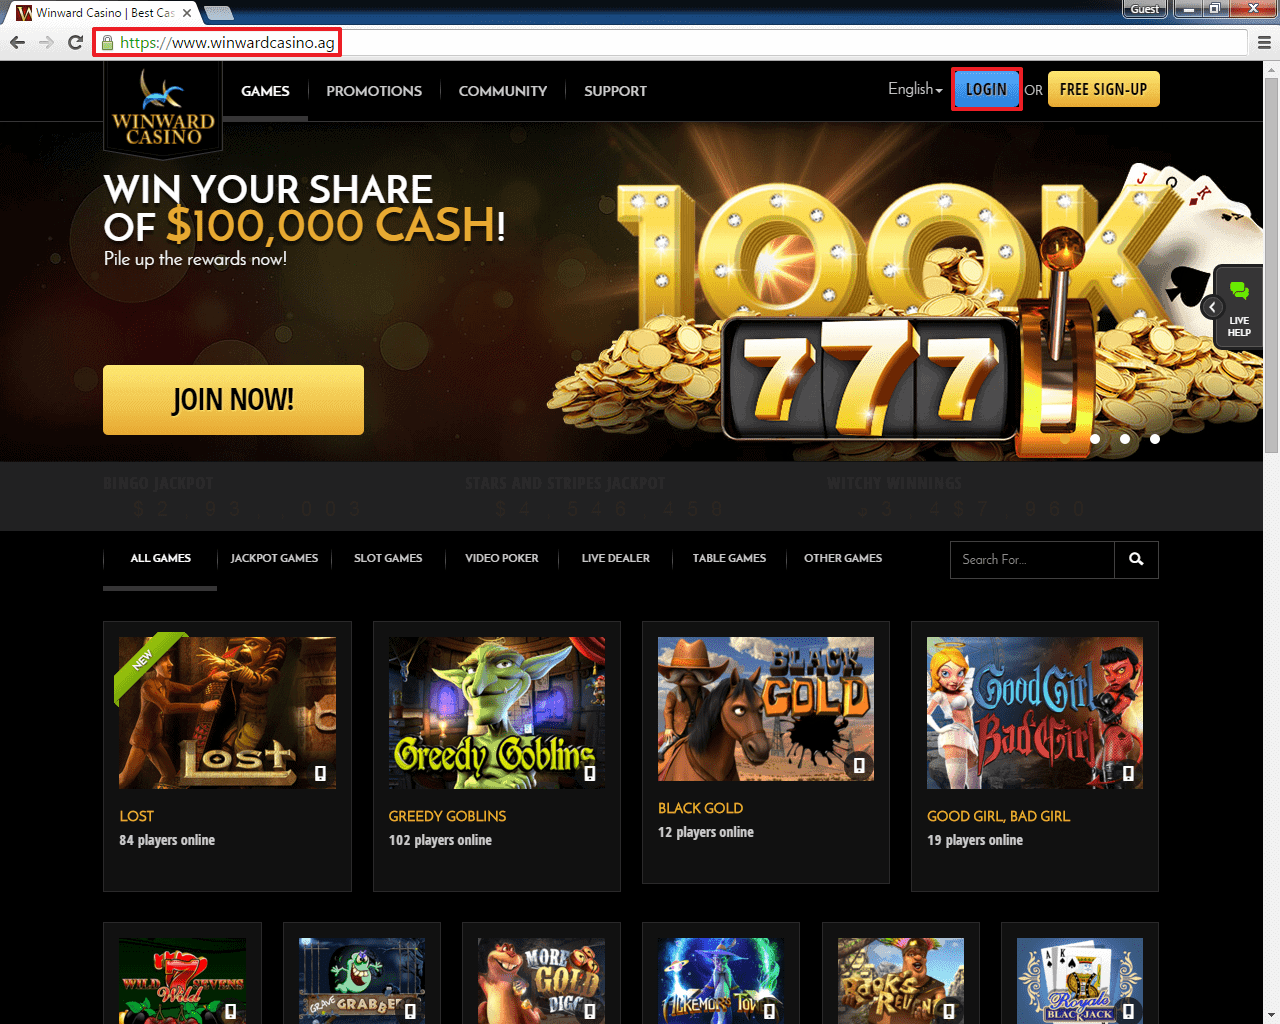 Online casino slot games powered by xenforo столото и вконтакте бесплатно